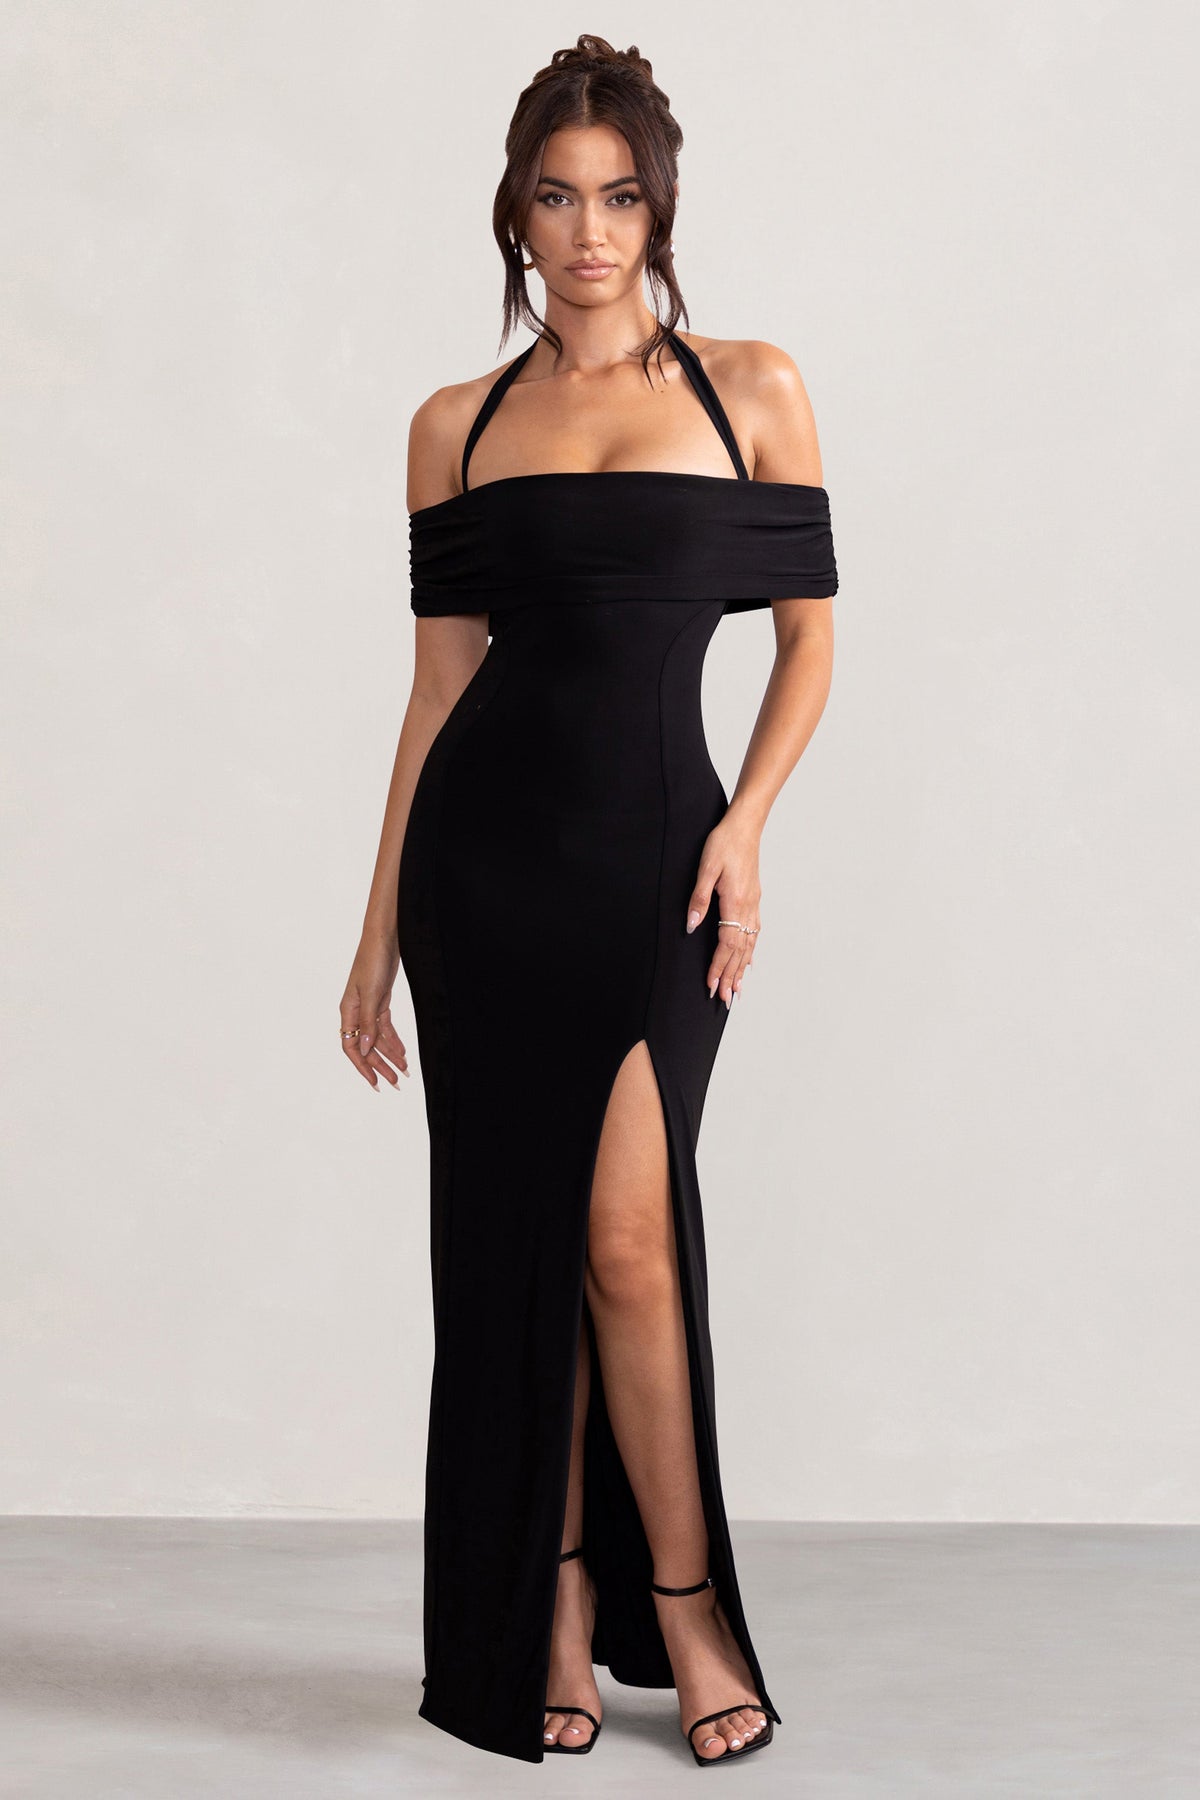 Law of Attraction Black Bardot Draped Split Maxi Dress – Club L London - USA